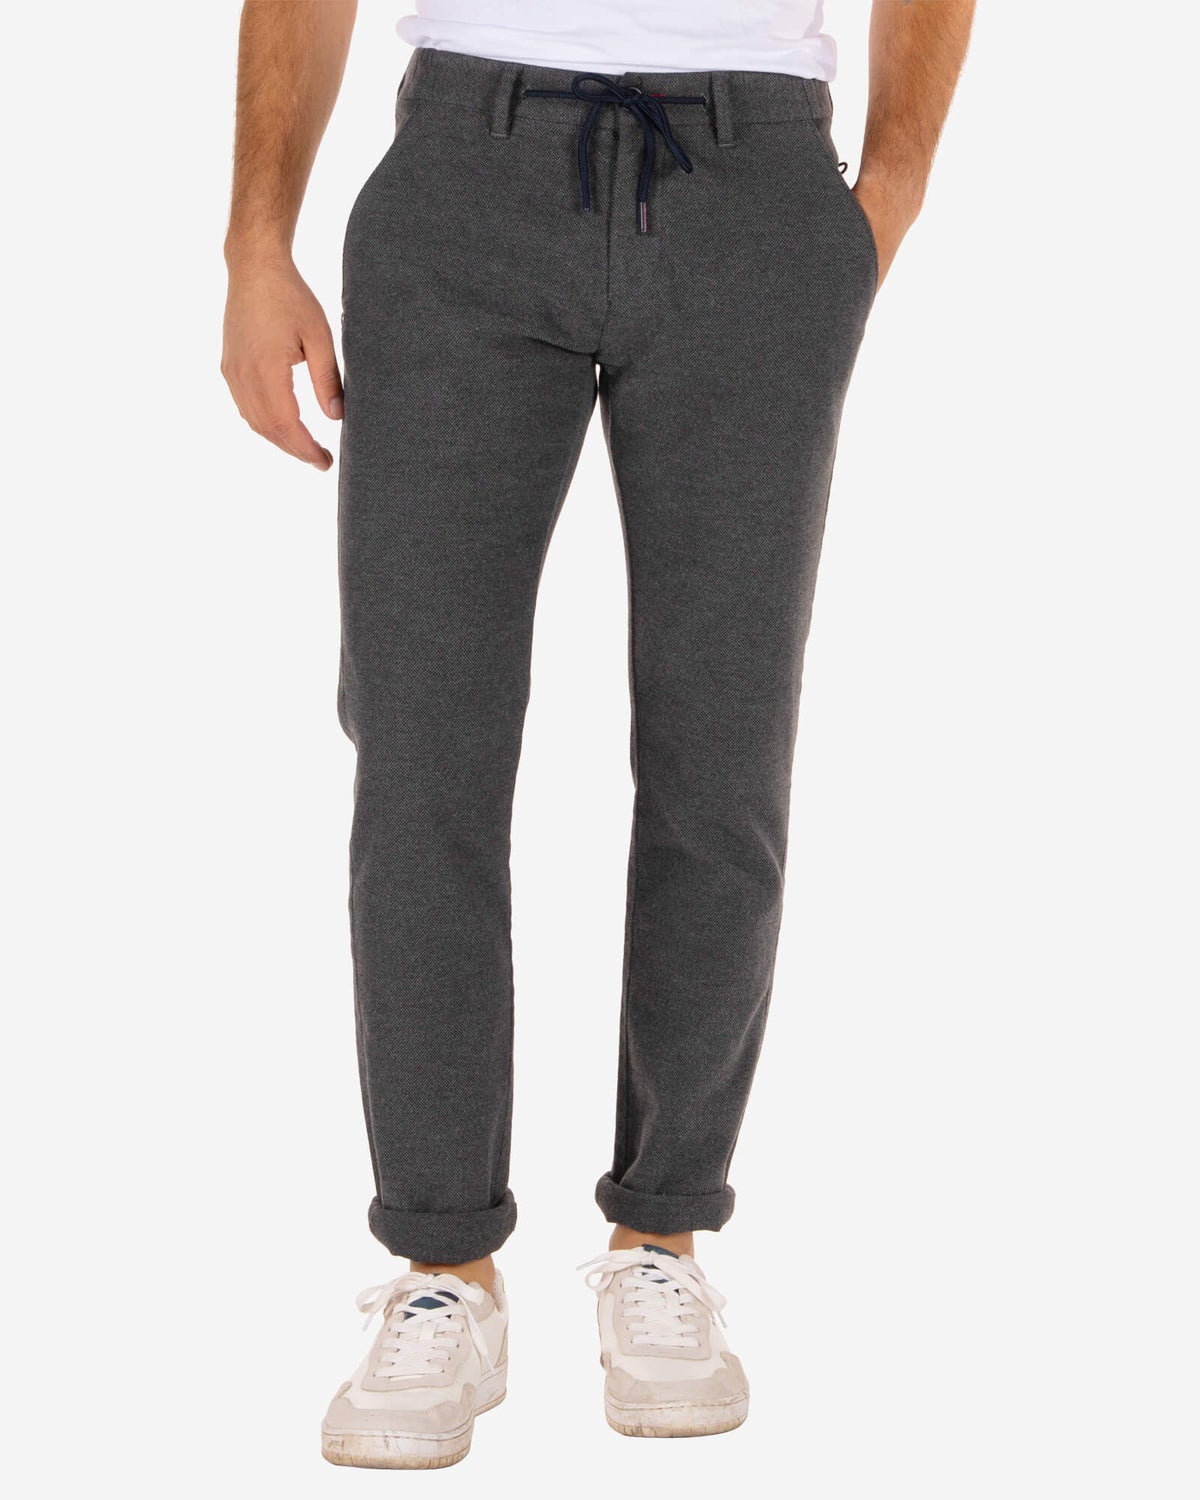 Les pantalons de survêtement Napier Relaxed Plain - Concrete Grey